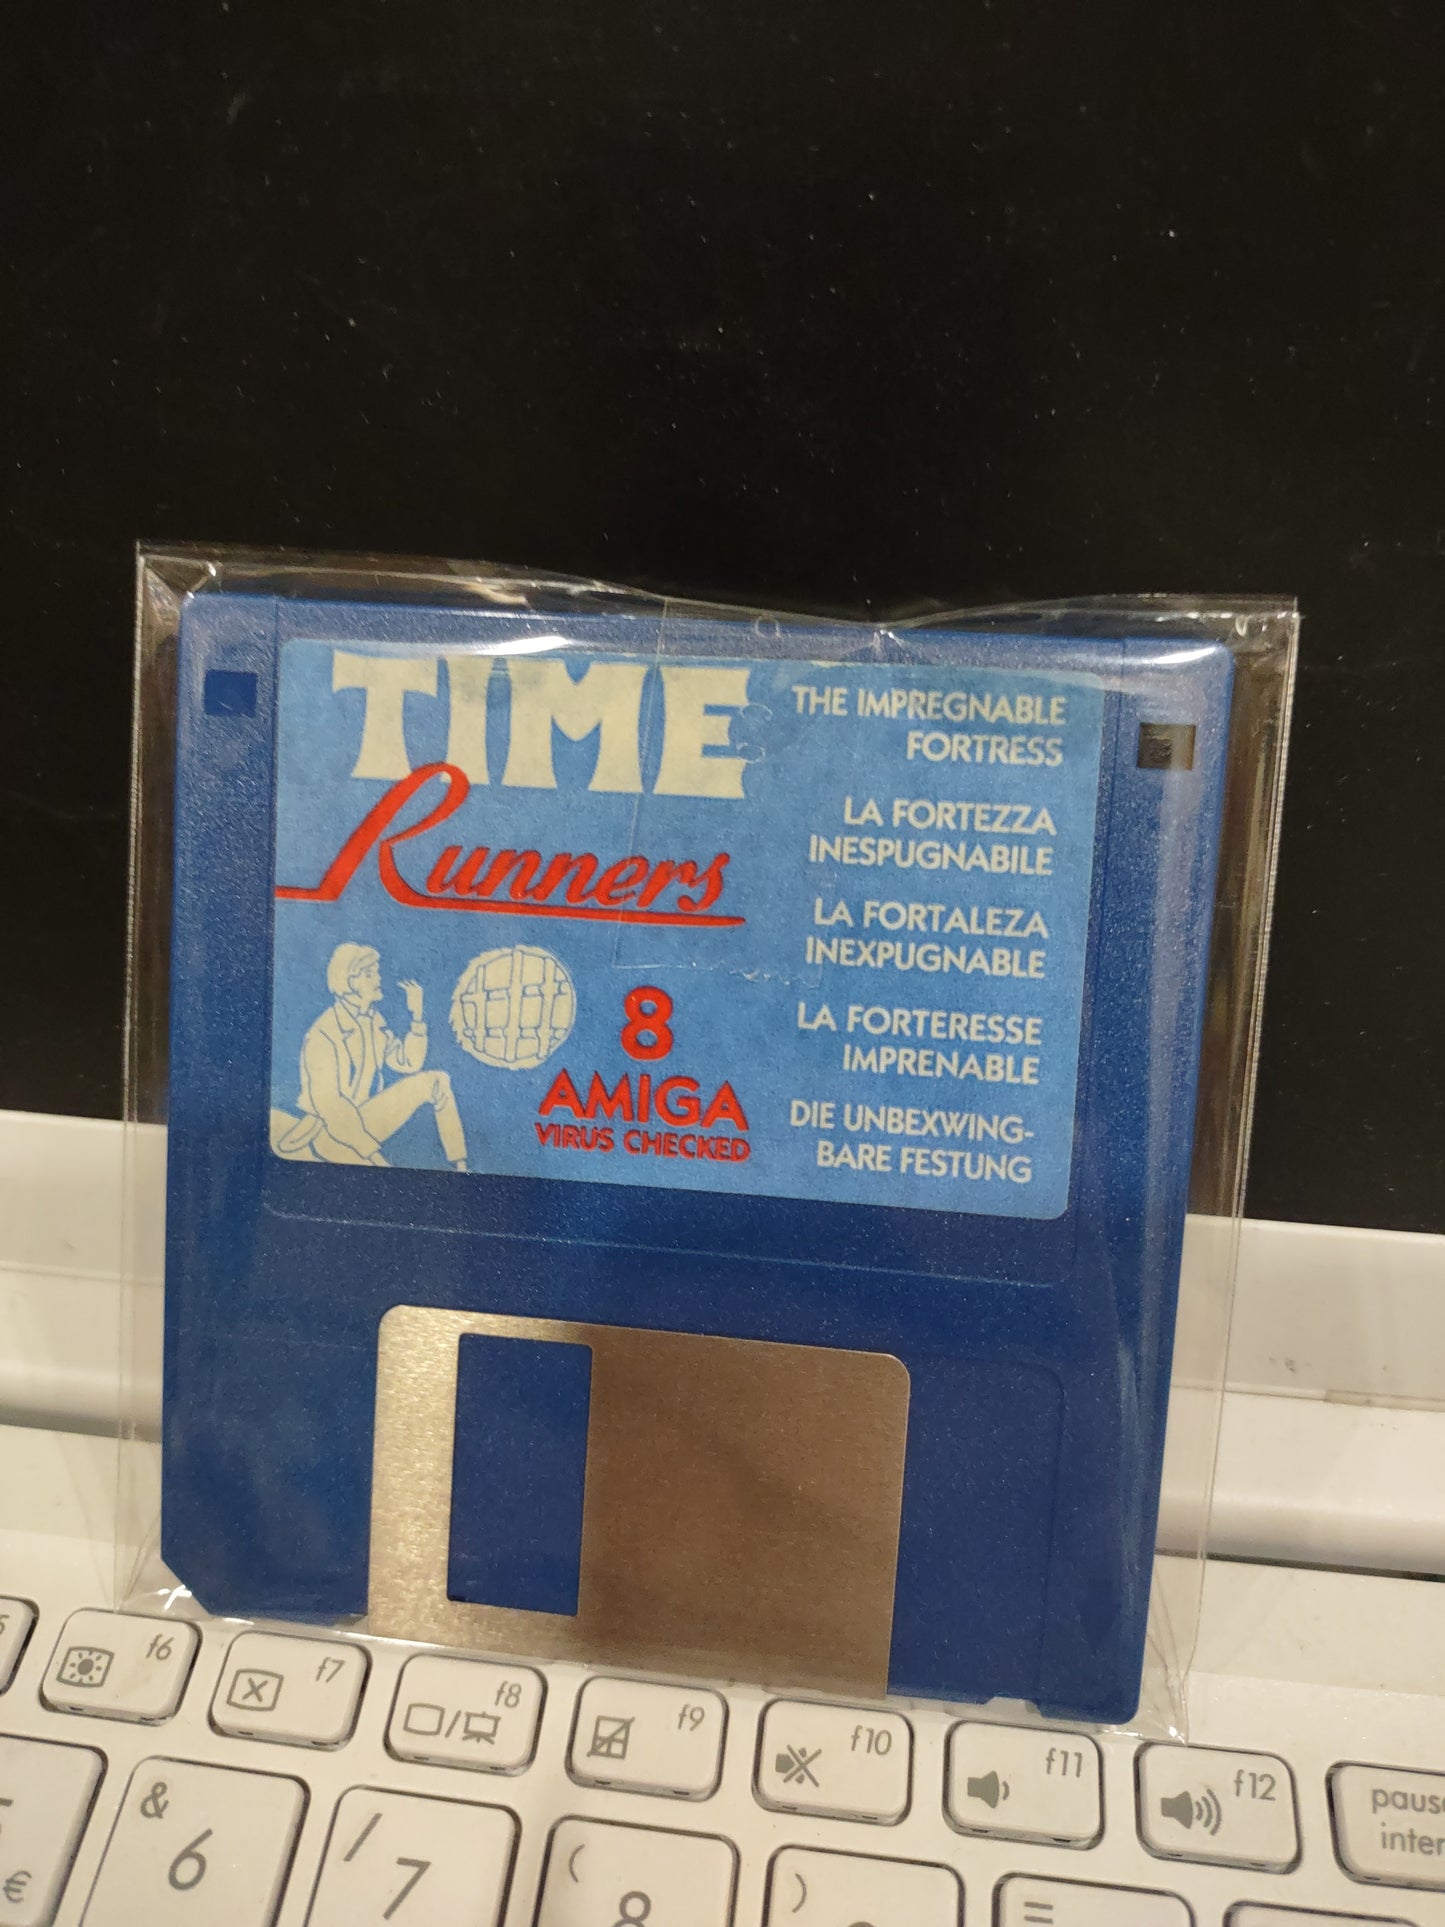 Floppy disk Amiga commodore Time runners 8 La Fortezza inespugnabile